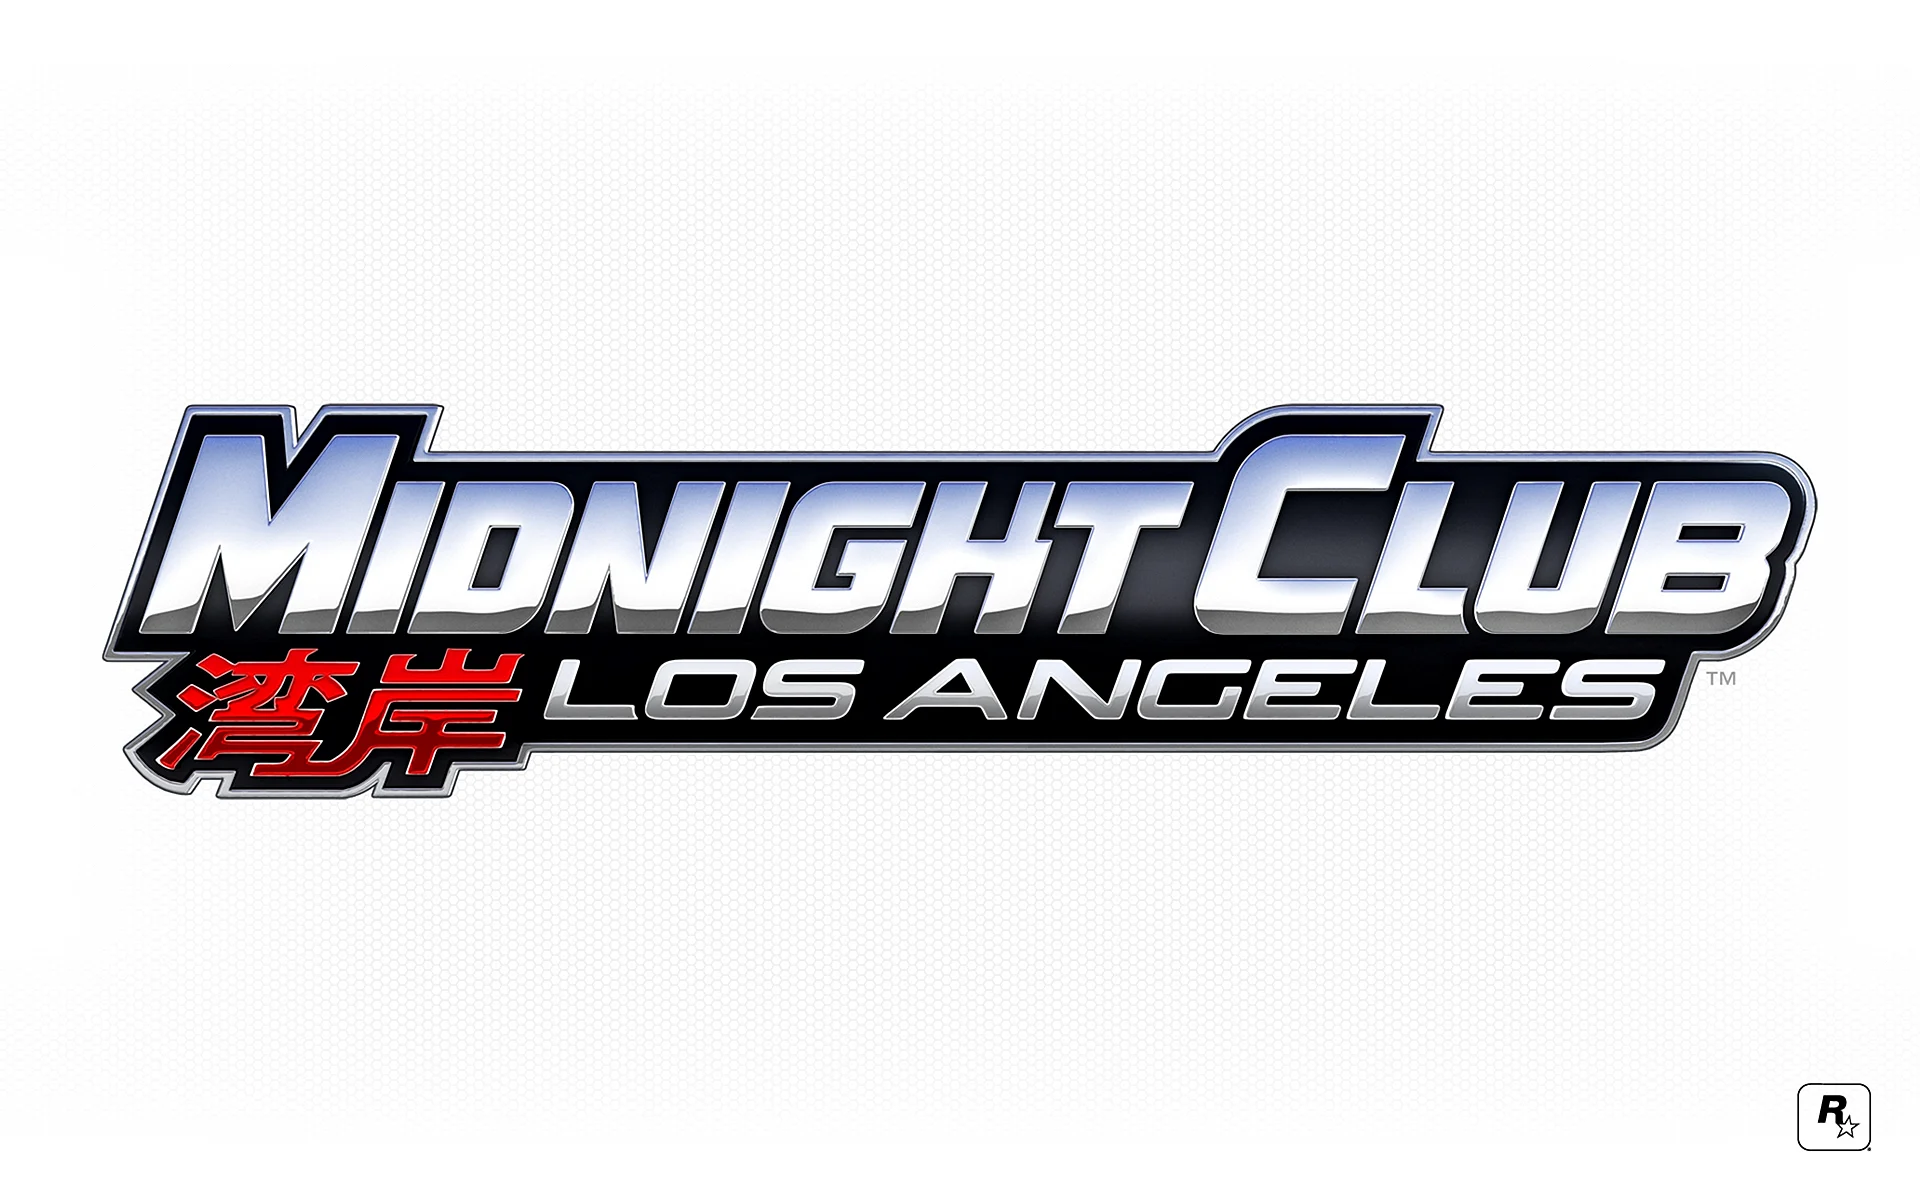 Midnight Club 3 Logo Wallpaper